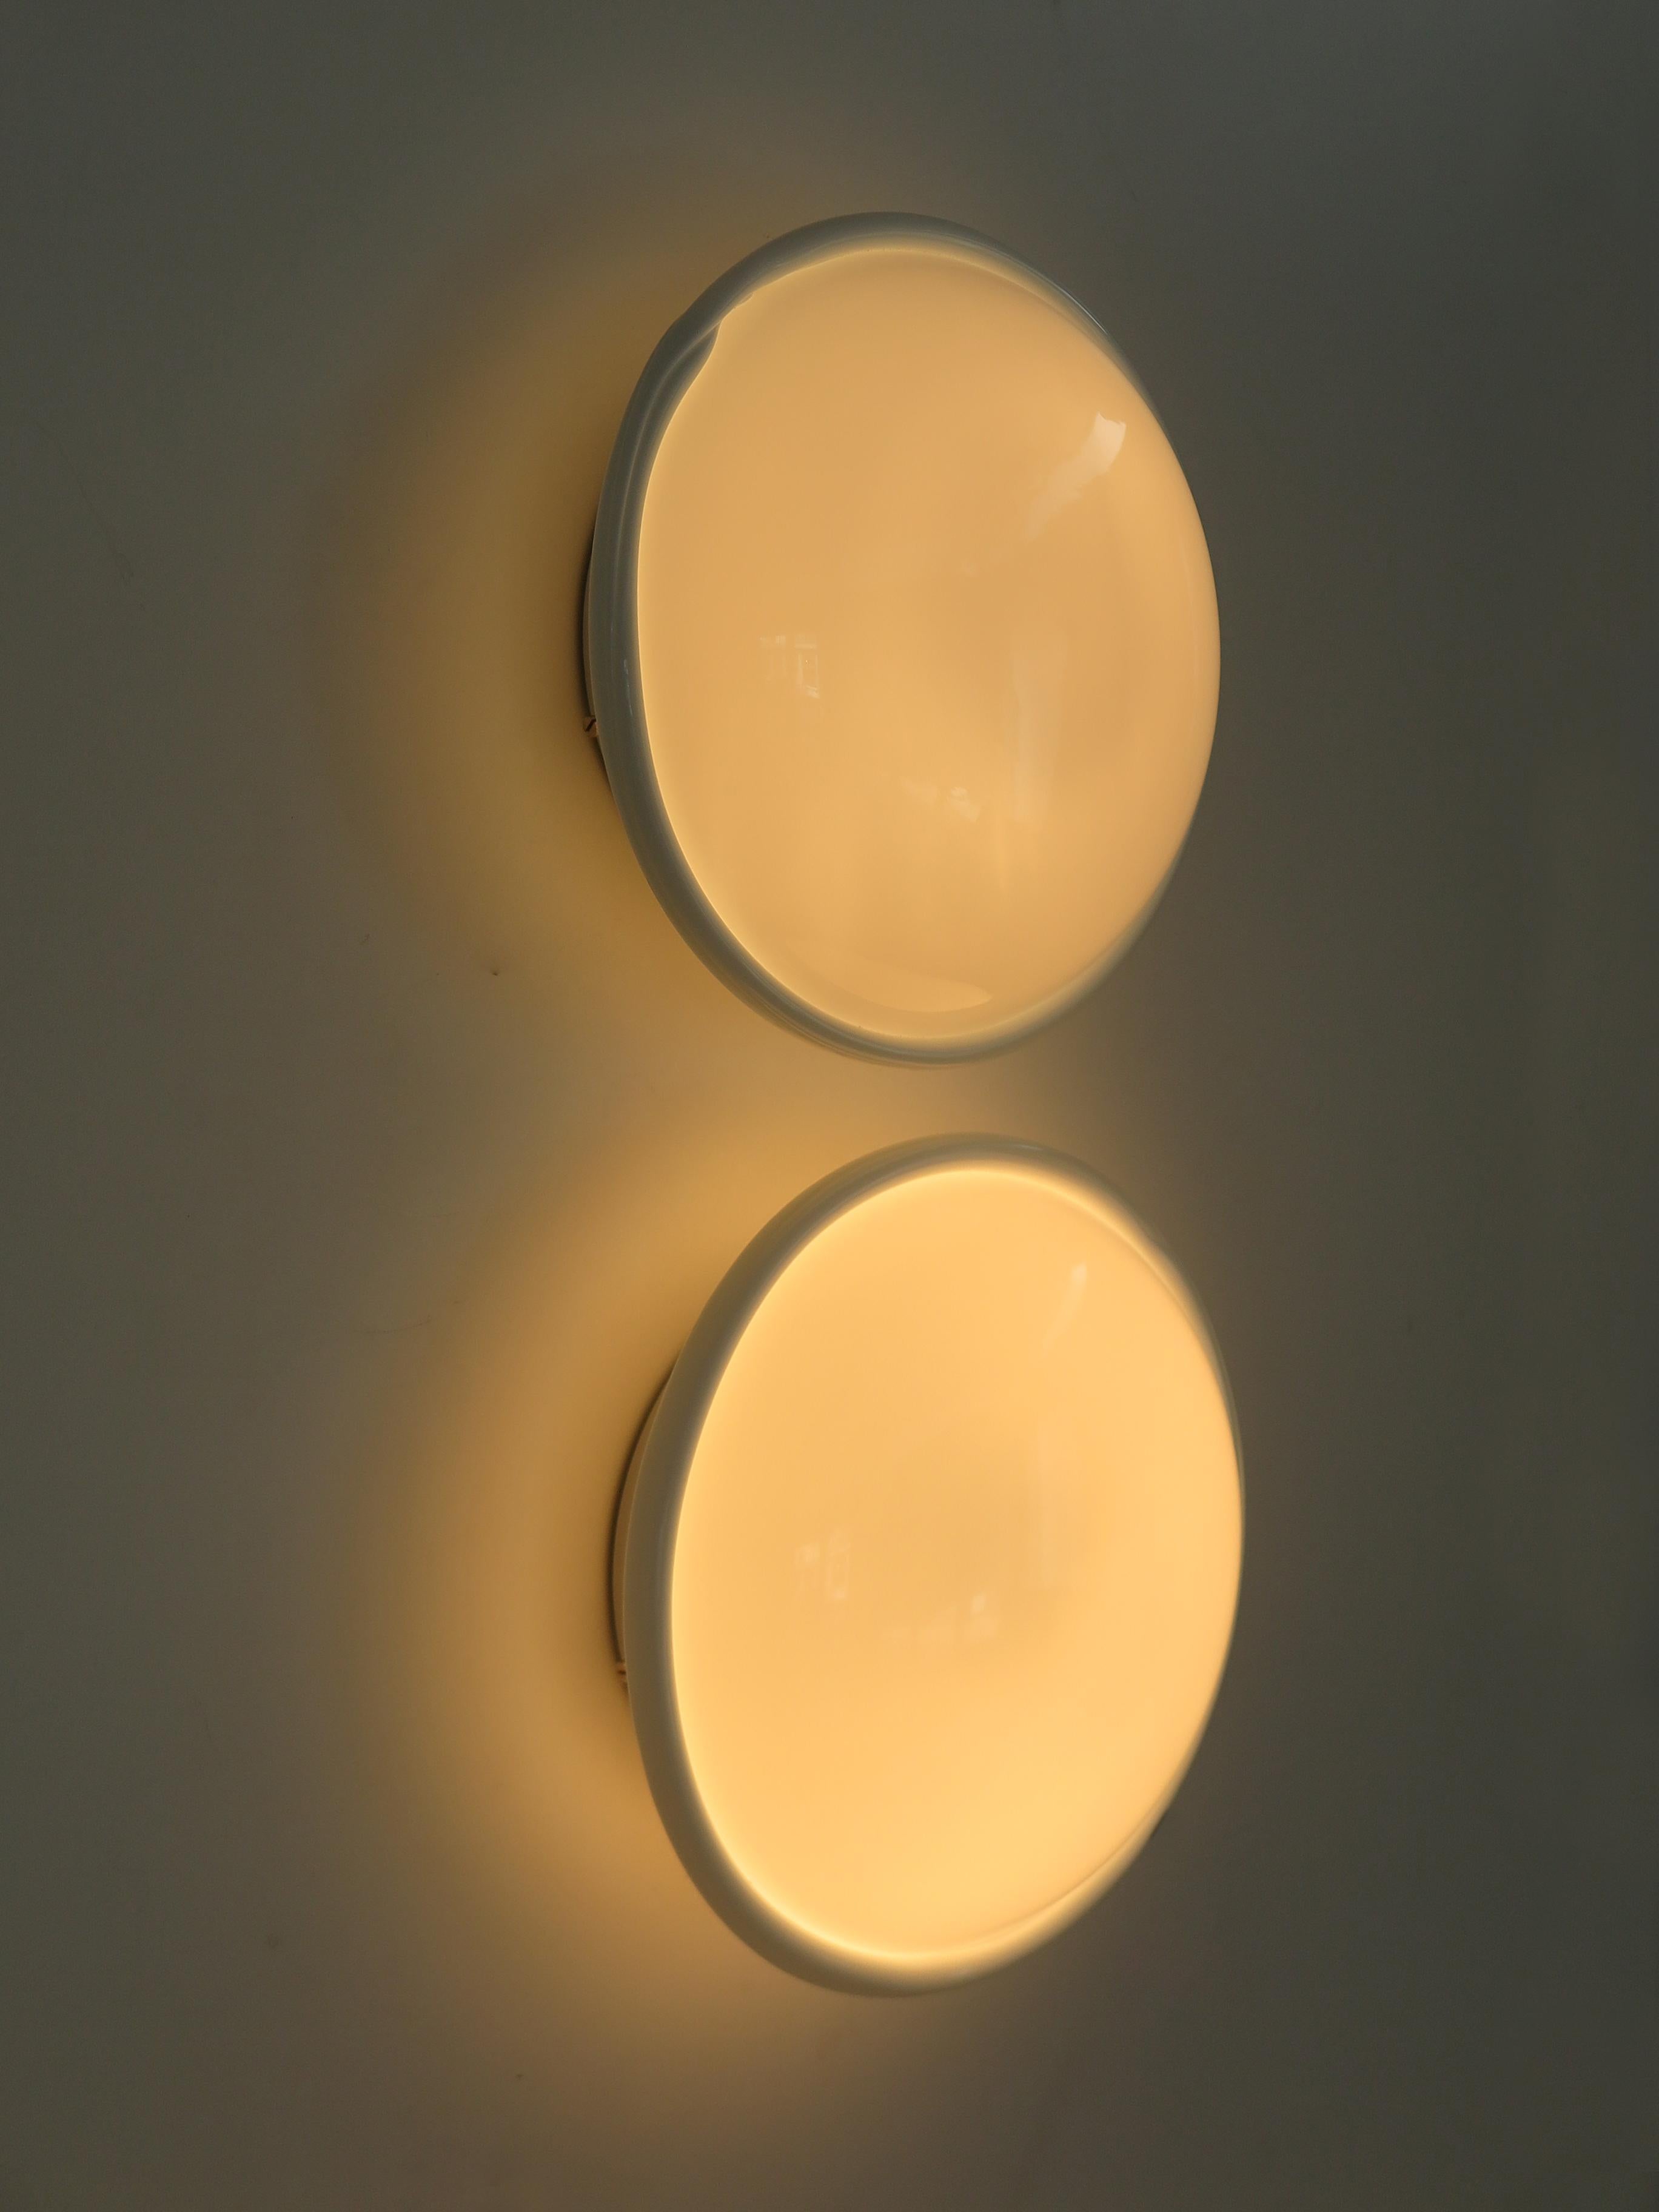 Paire d'appliques ou de plafonniers fabriqués par Venini Murano en verre soufflé blanc, marque Venini 1995 gravée sur le bord, Italie années 1990

Les lampes sont d'origine et présentent les signes normaux de l'âge et de l'utilisation.